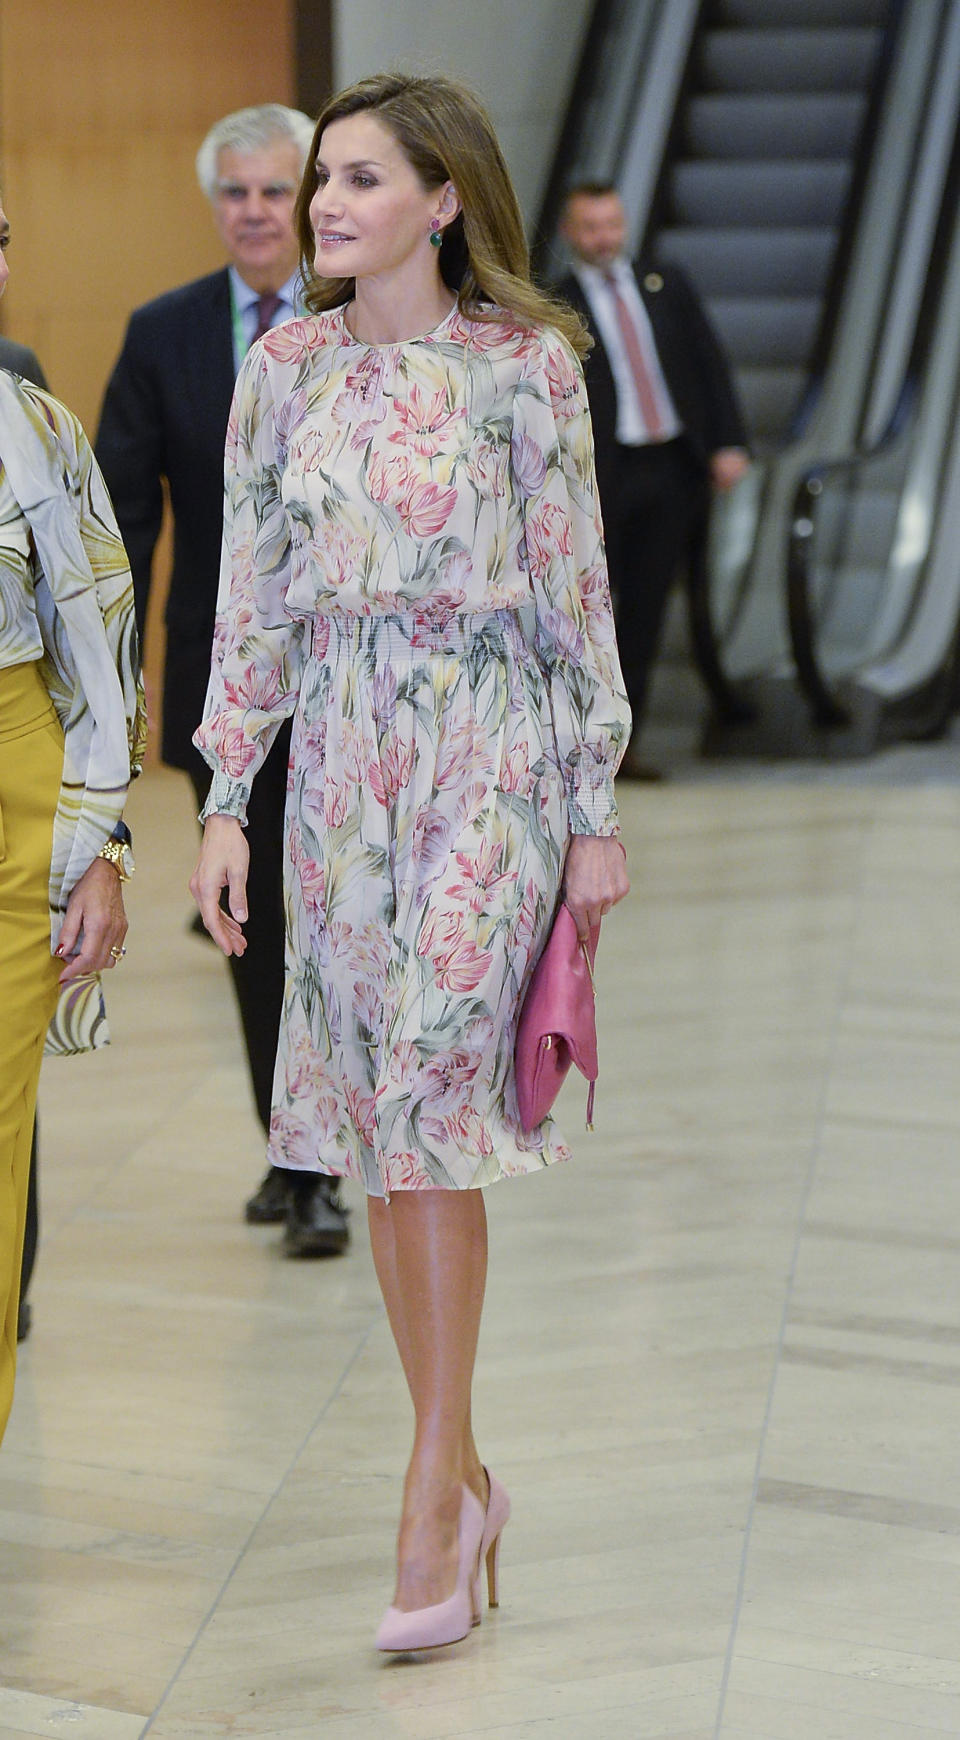 <p>La reina Letizia asistió a un evento en el museo de El Prado, en Madrid en este vestido de estampado floral con el que causó tendencia en el mundo de la moda/Getty Images </p>